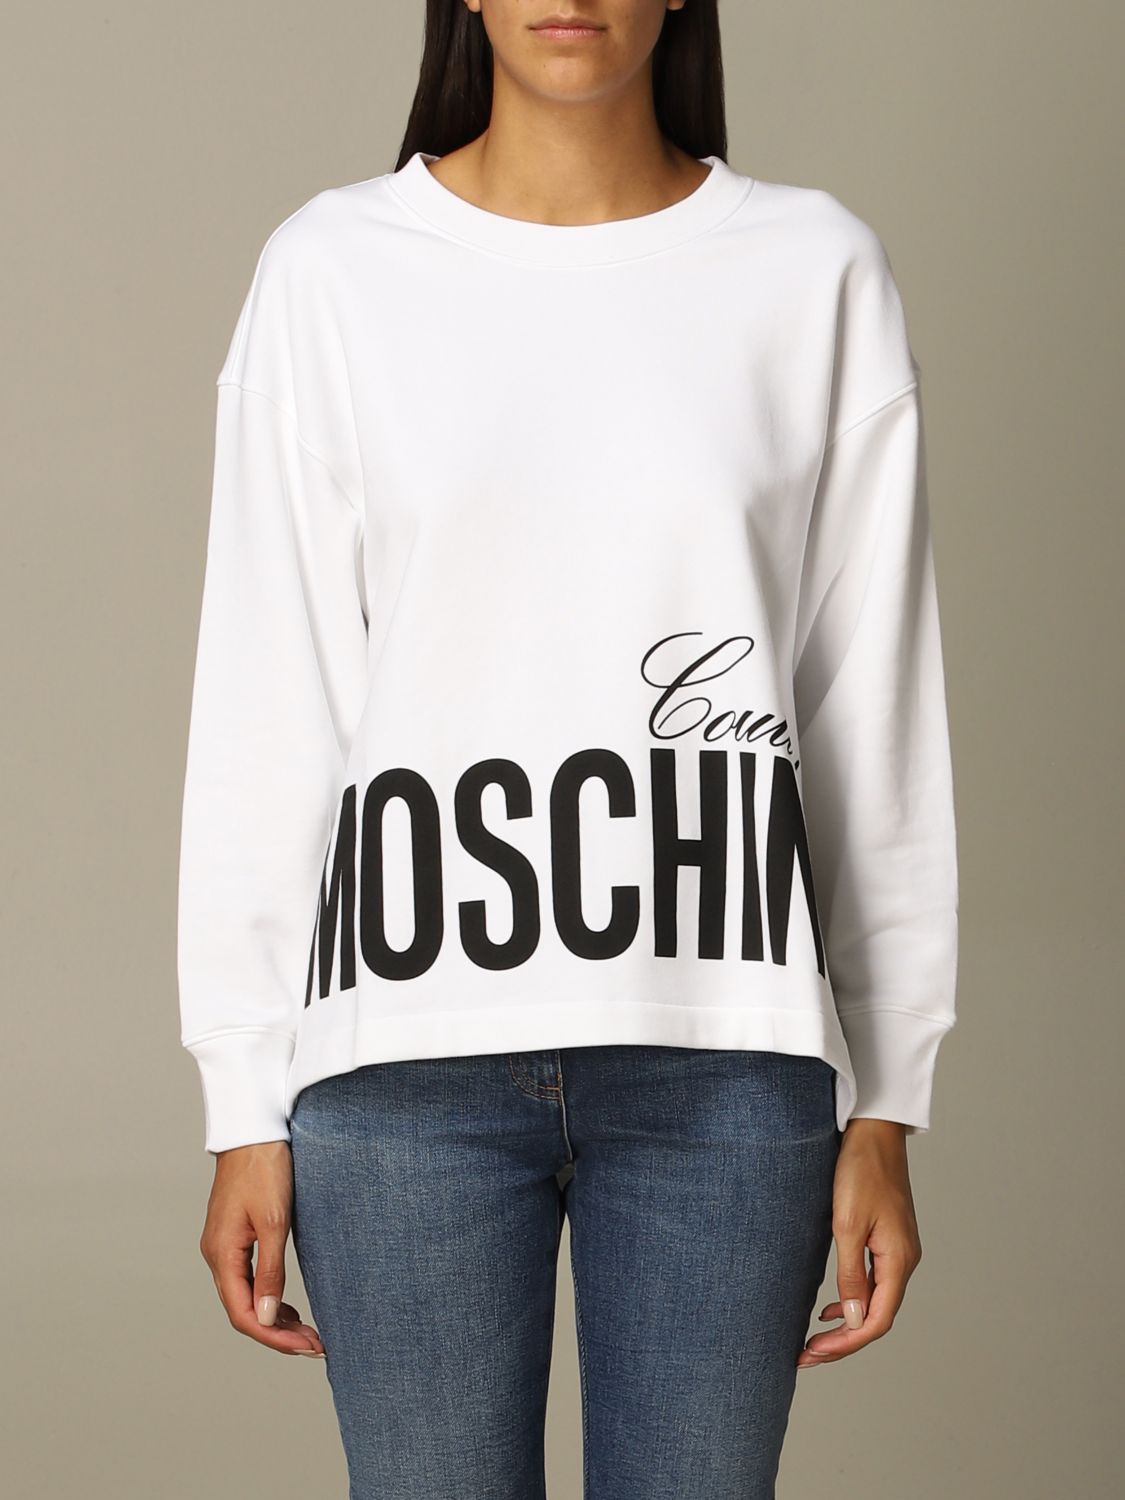 moschino sweatshirt white